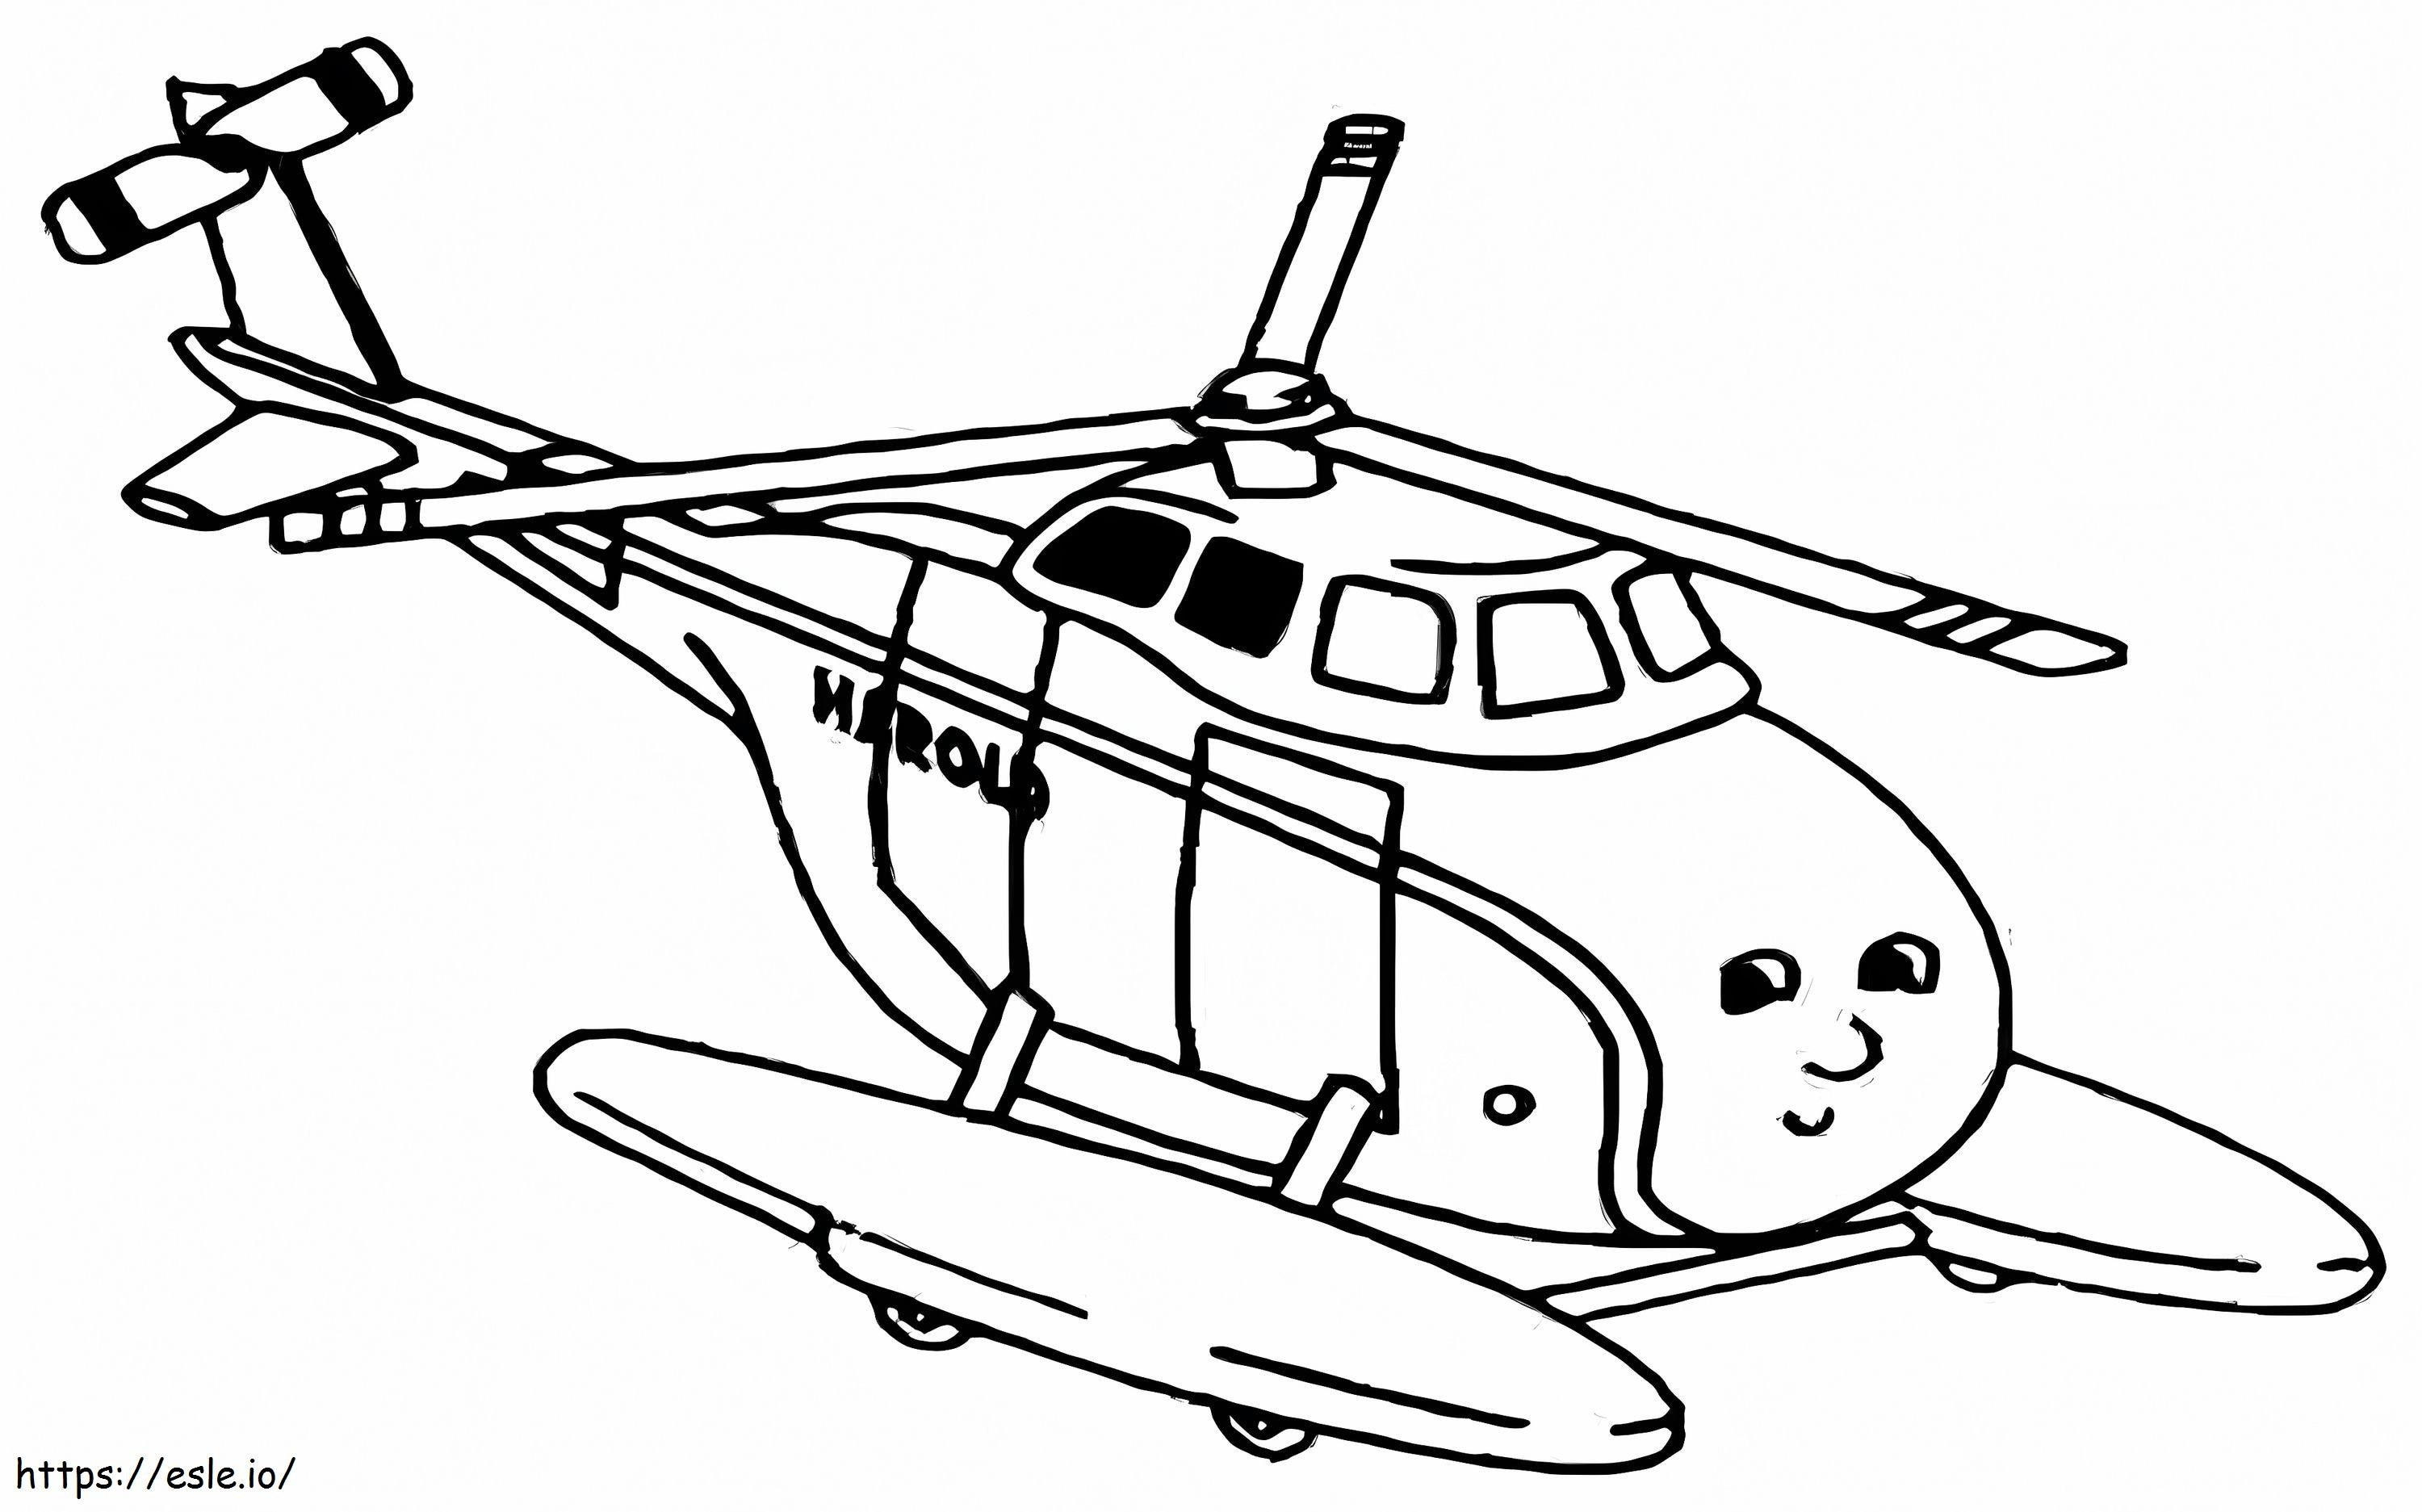 Helicóptero Harold para colorear